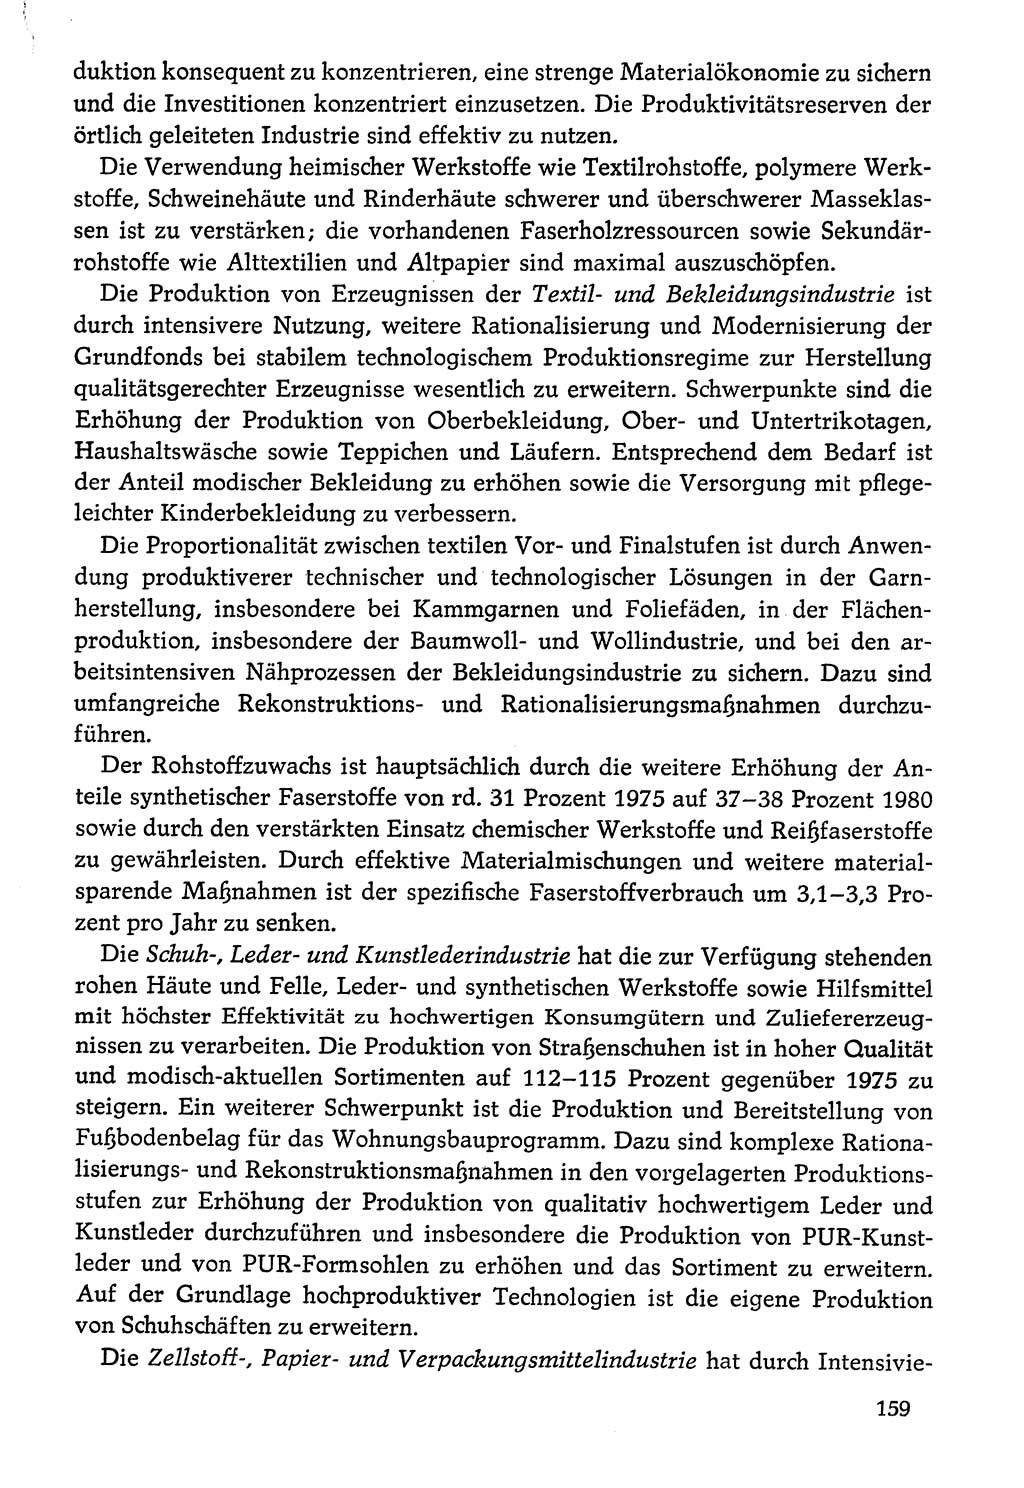 Dokumente der Sozialistischen Einheitspartei Deutschlands (SED) [Deutsche Demokratische Republik (DDR)] 1976-1977, Seite 159 (Dok. SED DDR 1976-1977, S. 159)